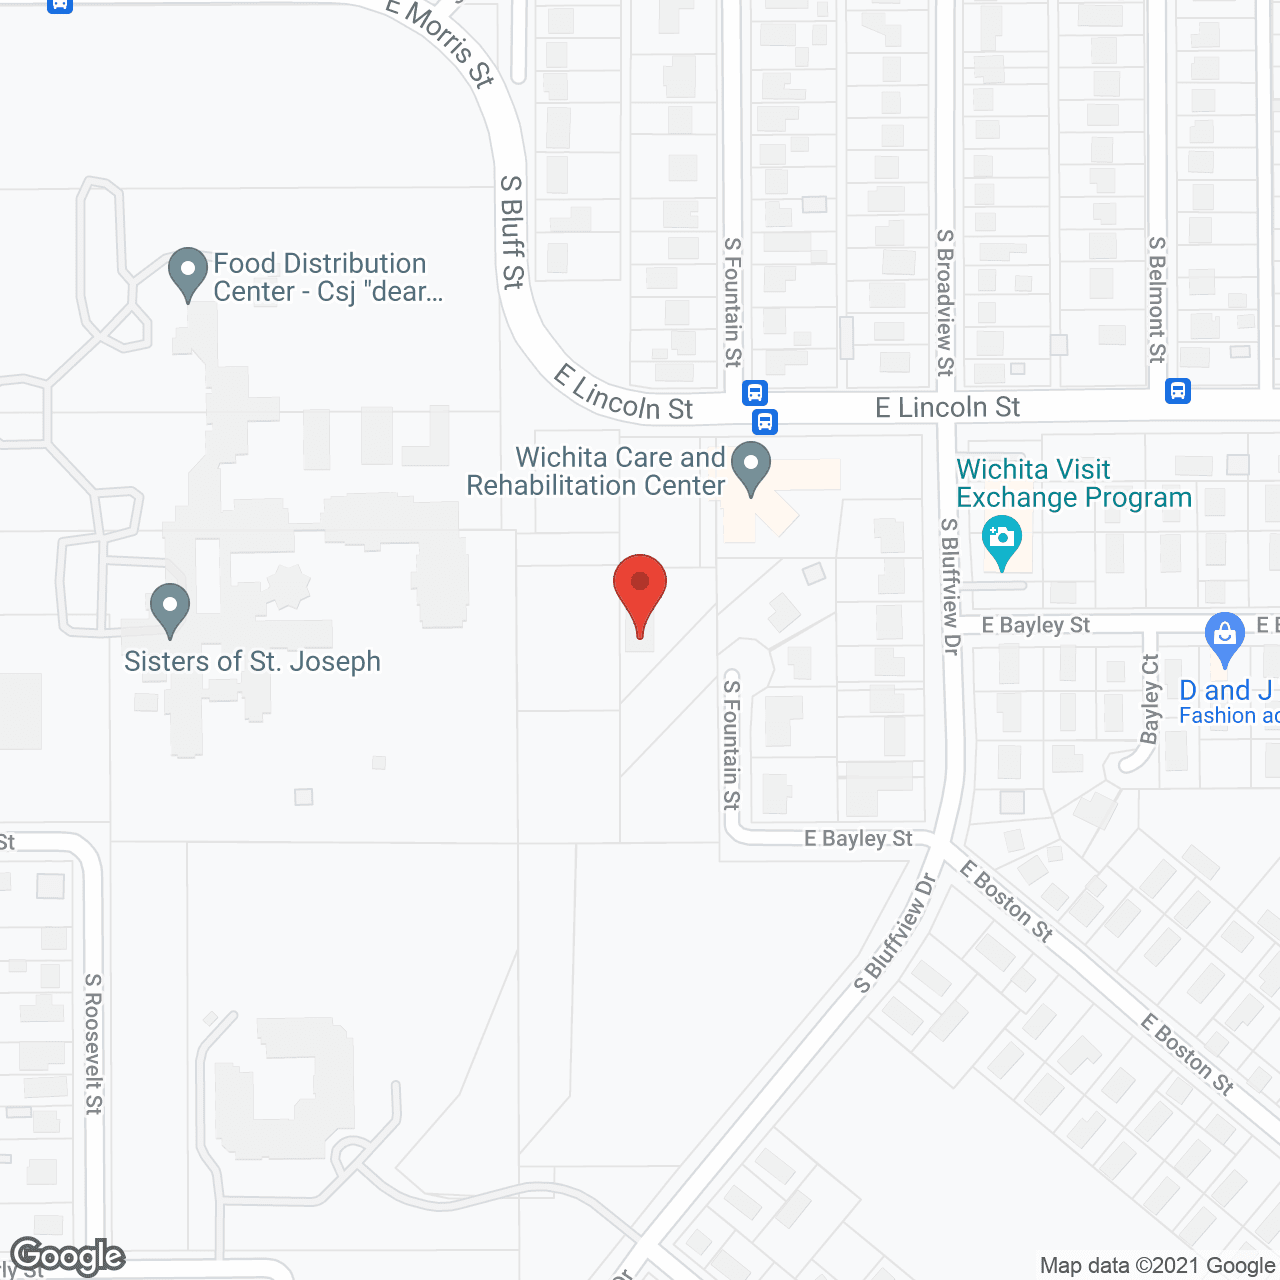 Golden LivingCenter - Wichita in google map